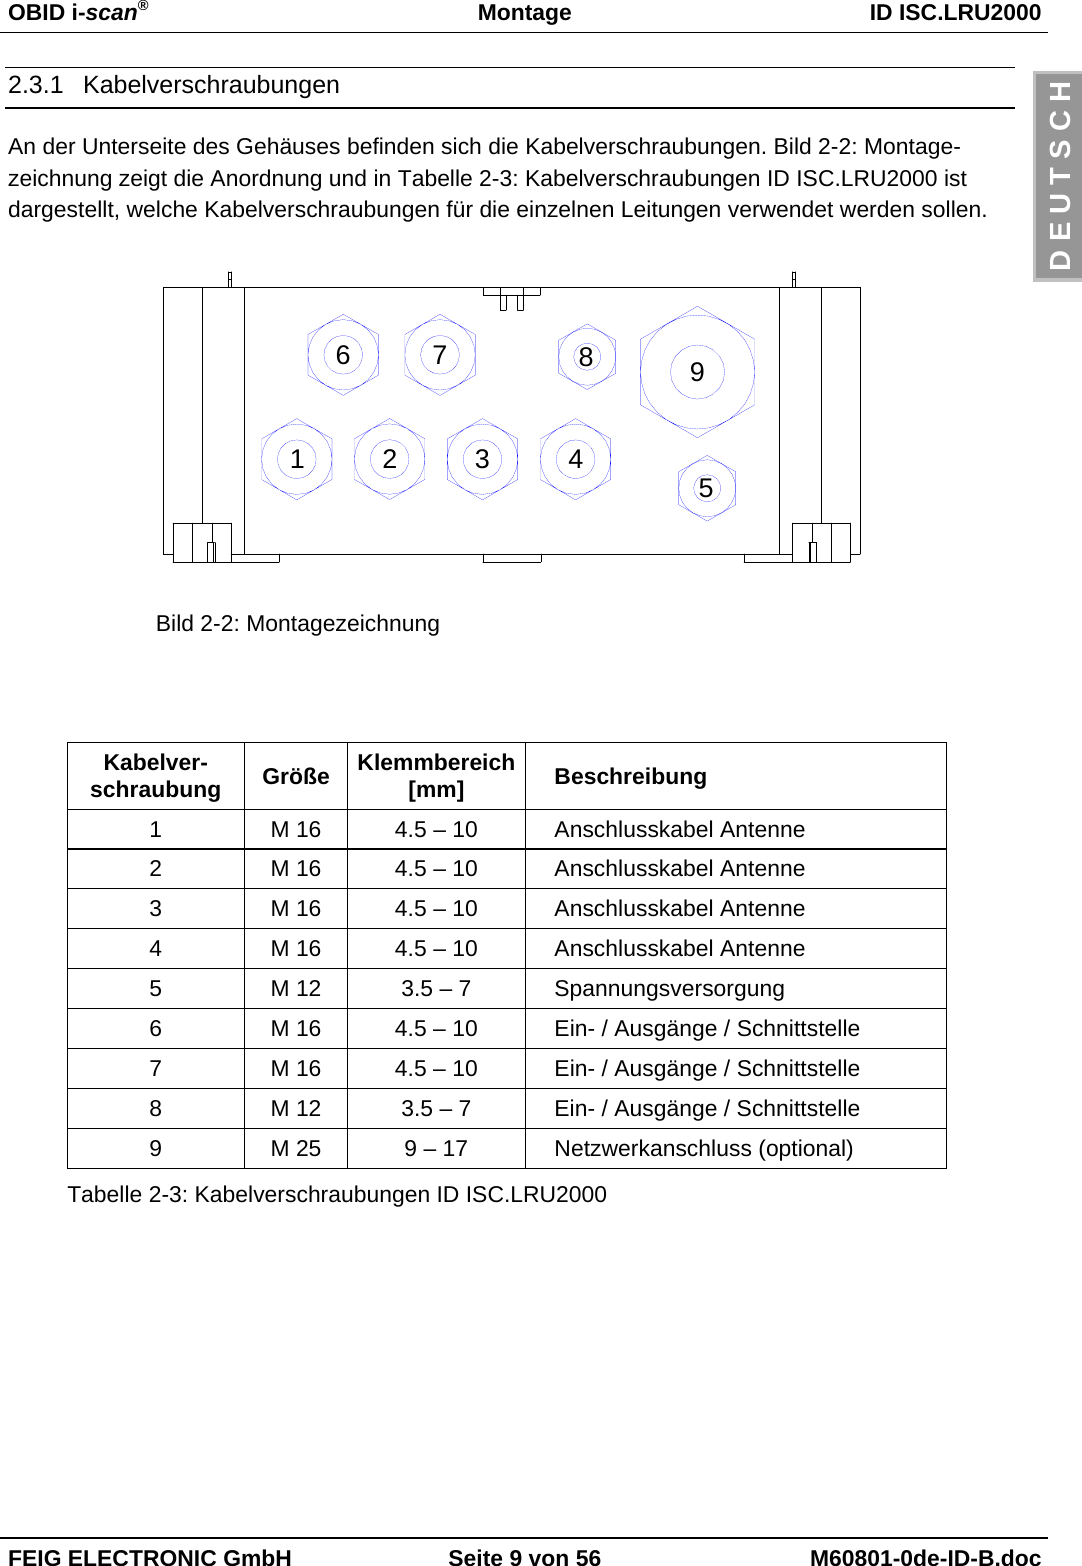 OBID i-scan®Montage ID ISC.LRU2000FEIG ELECTRONIC GmbH Seite 9 von 56 M60801-0de-ID-B.docD E U T S C H2.3.1 KabelverschraubungenAn der Unterseite des Gehäuses befinden sich die Kabelverschraubungen. Bild 2-2: Montage-zeichnung zeigt die Anordnung und in Tabelle 2-3: Kabelverschraubungen ID ISC.LRU2000 istdargestellt, welche Kabelverschraubungen für die einzelnen Leitungen verwendet werden sollen.21 3958467Bild 2-2: MontagezeichnungKabelver-schraubung Größe Klemmbereich[mm] Beschreibung1 M 16 4.5 – 10 Anschlusskabel Antenne2 M 16 4.5 – 10 Anschlusskabel Antenne3 M 16 4.5 – 10 Anschlusskabel Antenne4 M 16 4.5 – 10 Anschlusskabel Antenne5 M 12 3.5 – 7 Spannungsversorgung6 M 16 4.5 – 10 Ein- / Ausgänge / Schnittstelle7 M 16 4.5 – 10 Ein- / Ausgänge / Schnittstelle8 M 12 3.5 – 7 Ein- / Ausgänge / Schnittstelle9 M 25 9 – 17 Netzwerkanschluss (optional)Tabelle 2-3: Kabelverschraubungen ID ISC.LRU2000